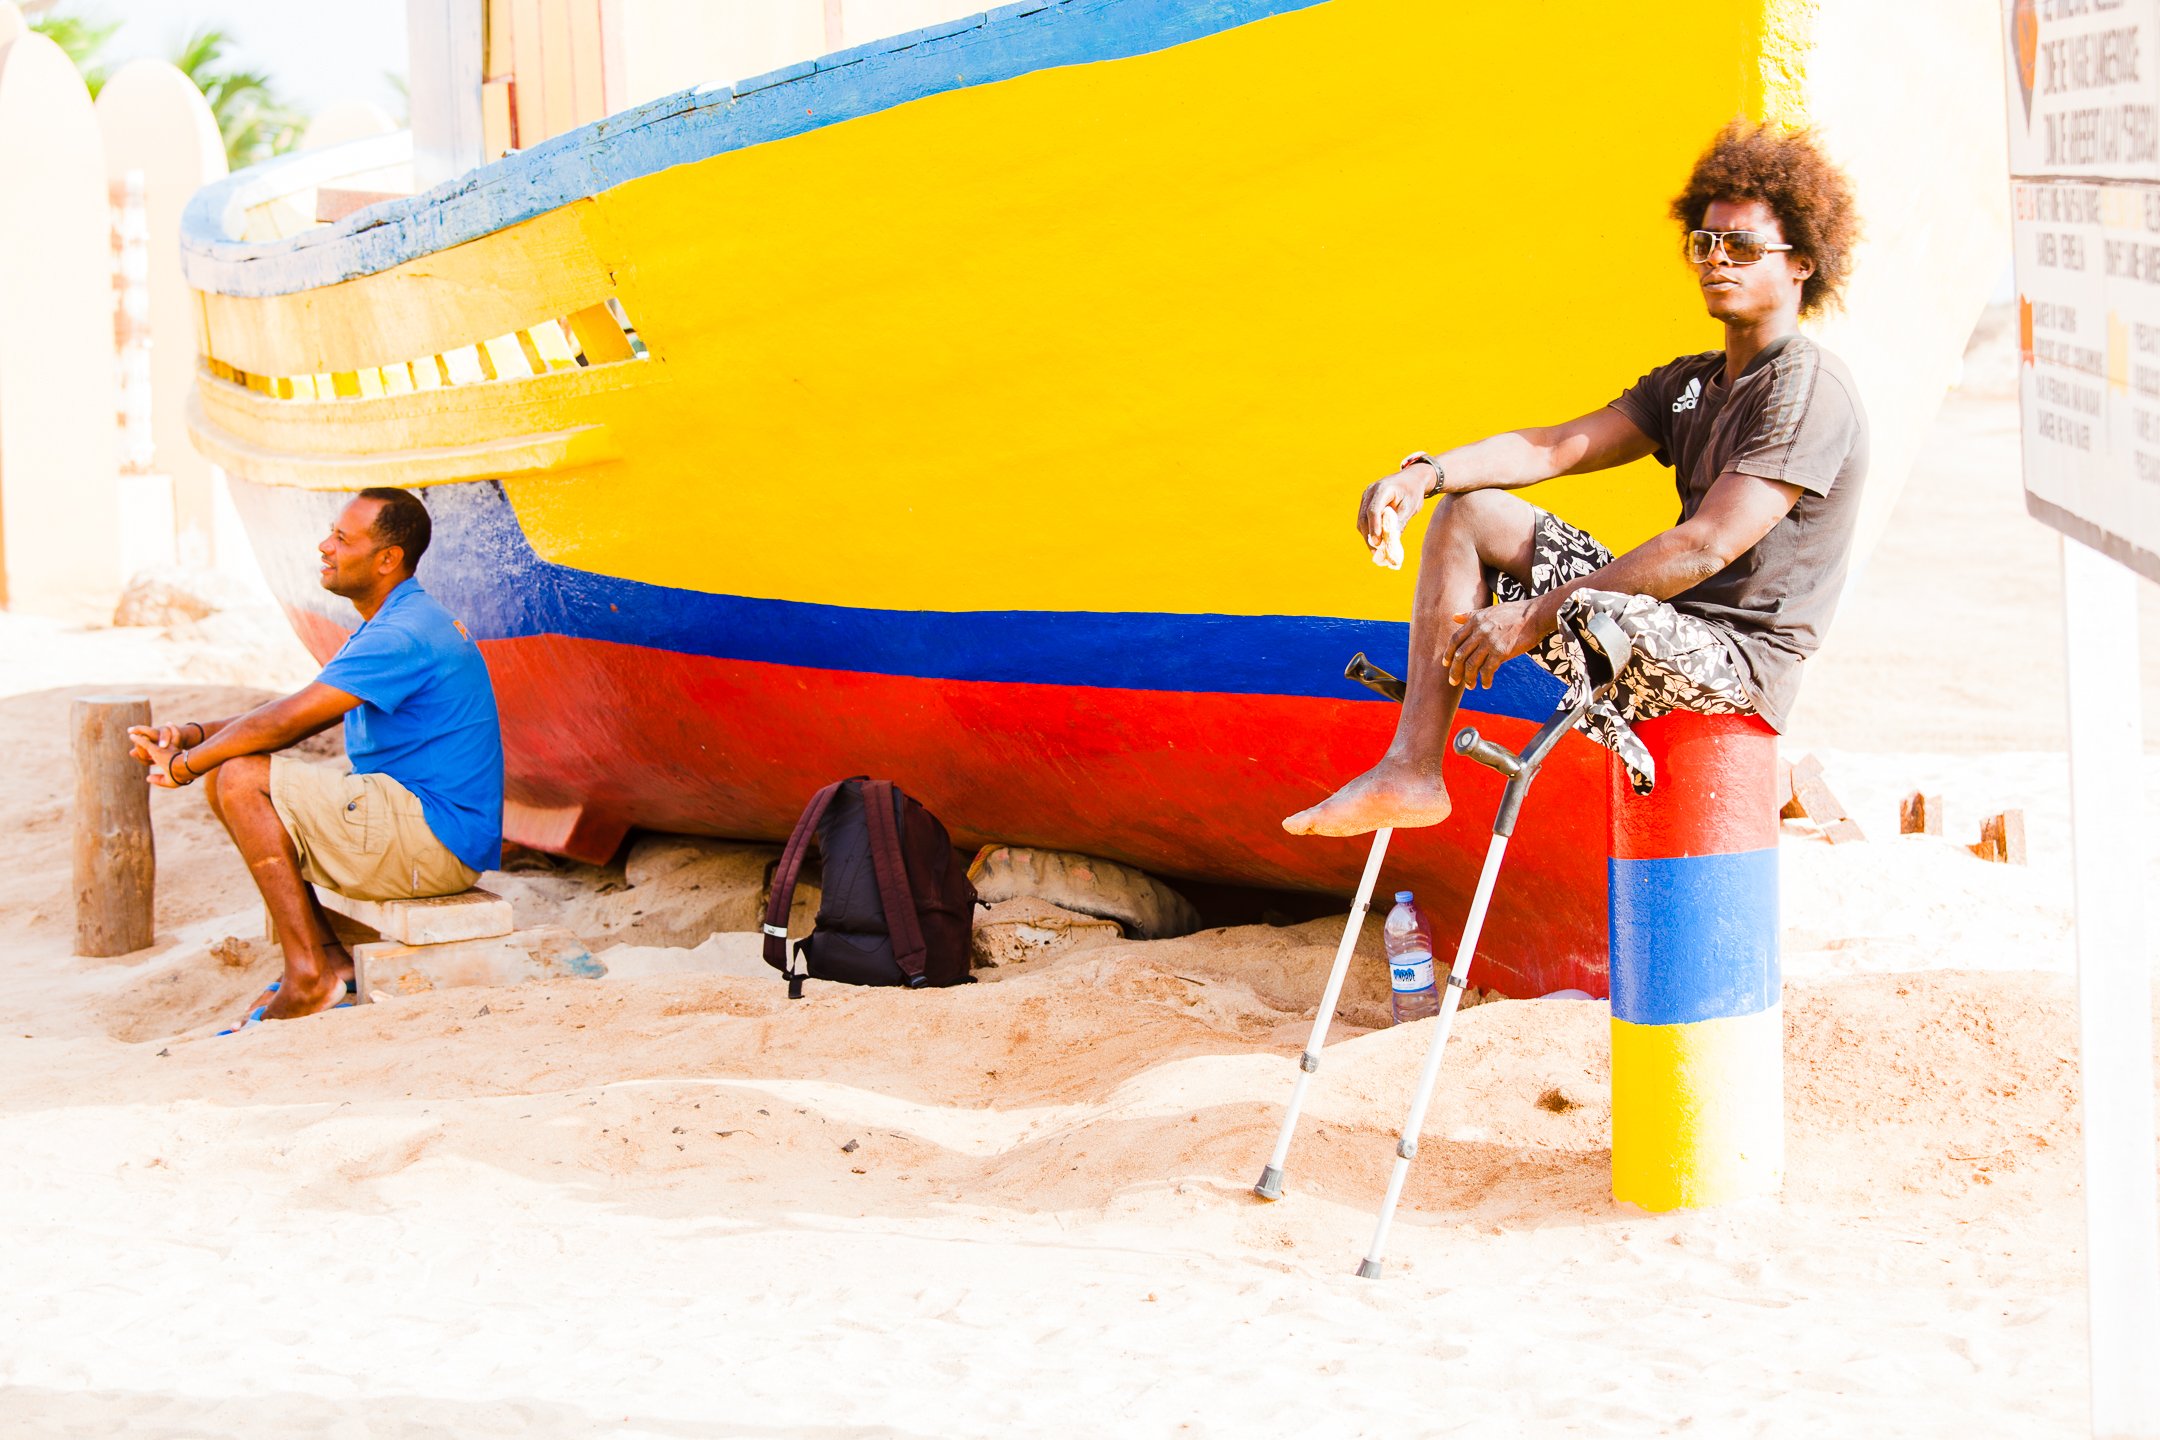  Story of a captain, Capo Verde, 2011 ©Laura Elo 